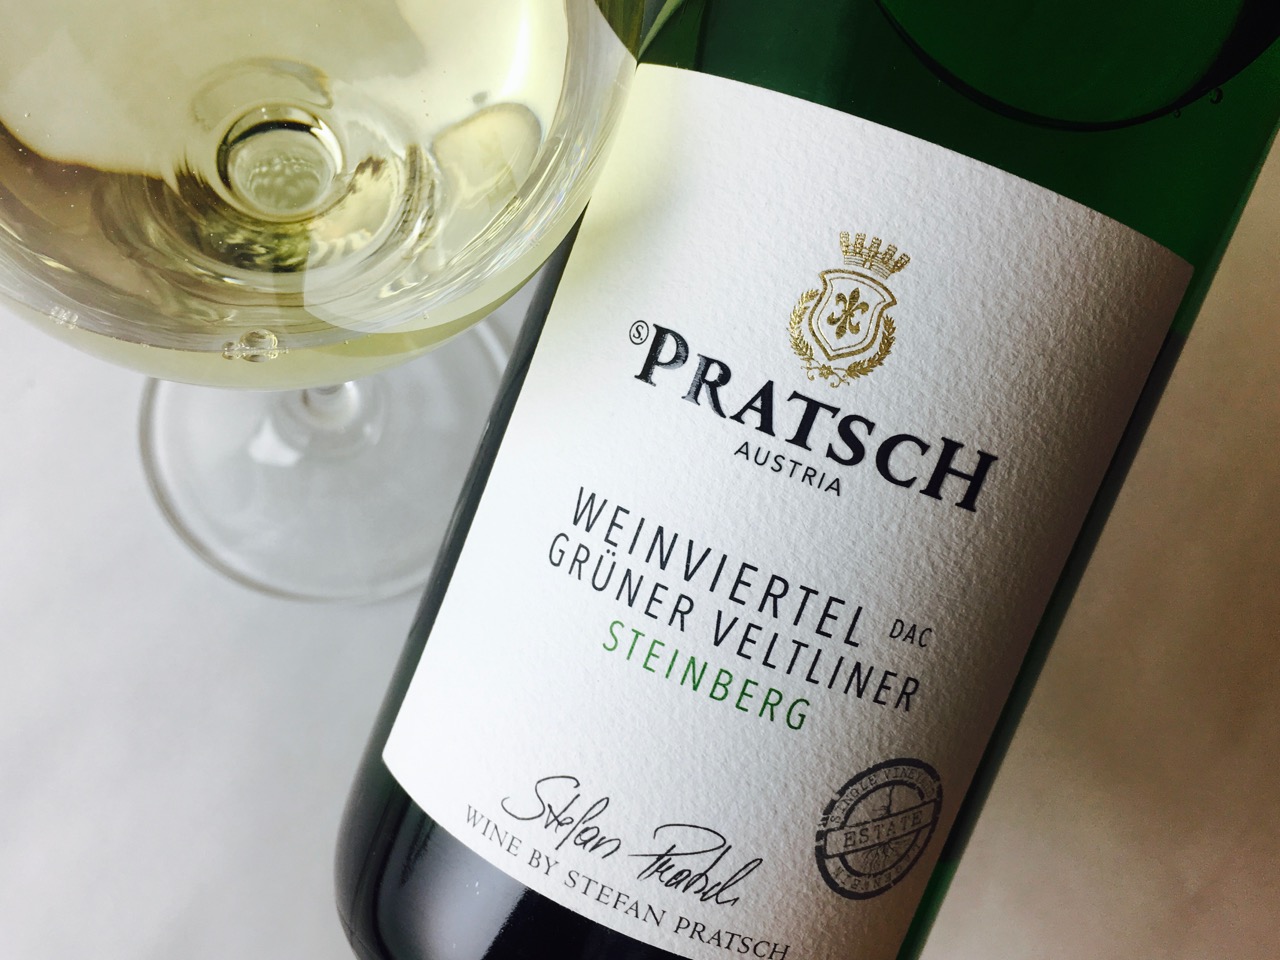 2015 Pratsch Grüner Veltliner Steinberg Weinviertel